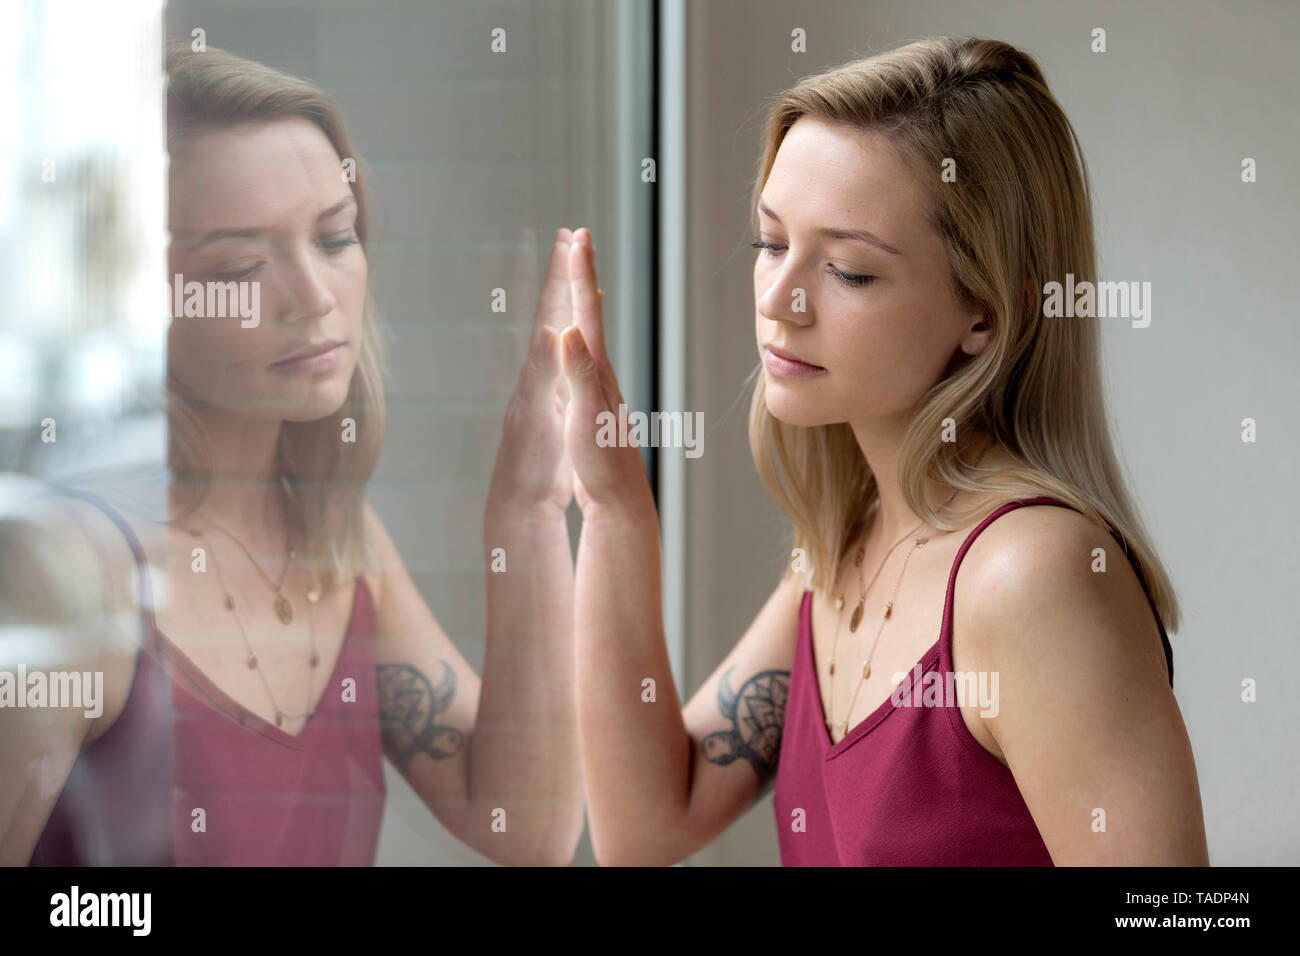 Porträt der blonde junge Frau und ihre Reflexion auf Fensterglas Stockfoto